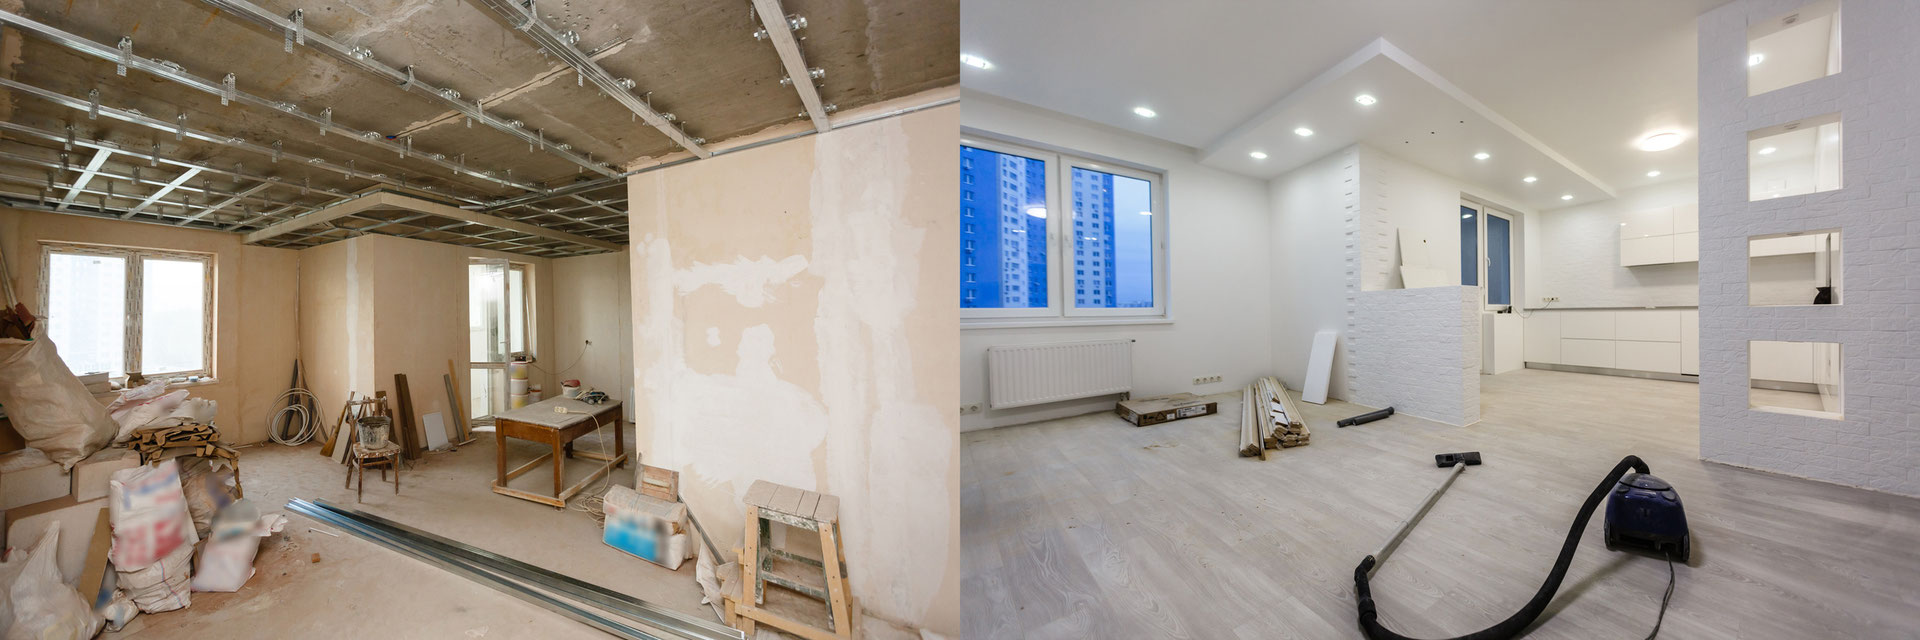 Usługi remontowe Gdańsk - usługi budowlane, remonty mieszkań